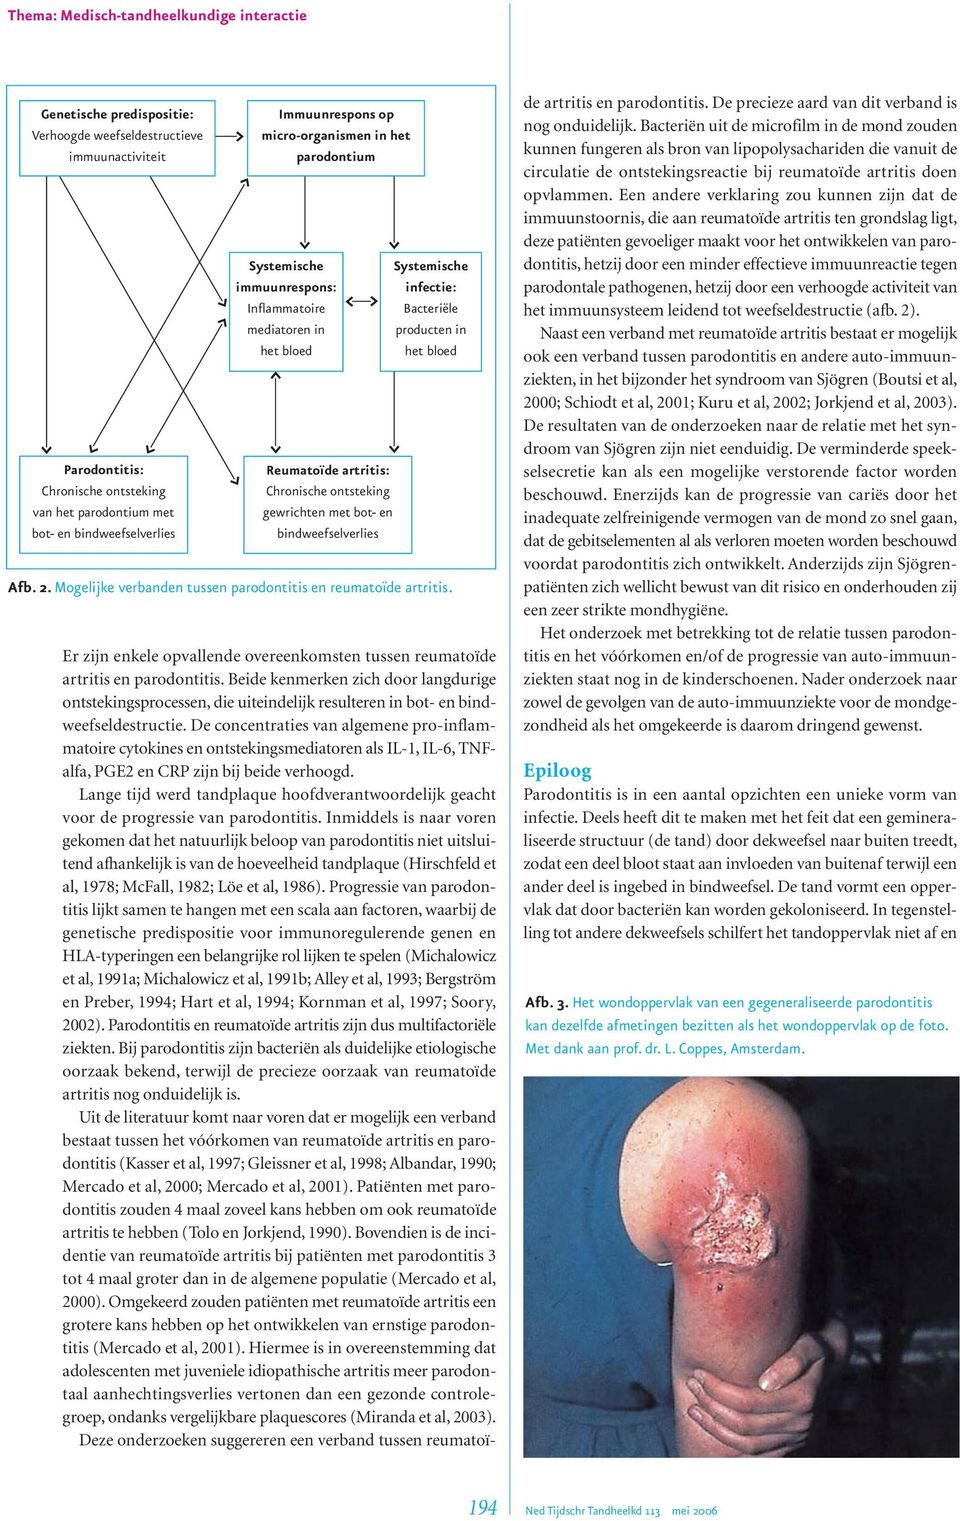 en bindweefselverlies Systemische infectie: Bacteriële producten in het bloed Afb. 2. Mogelijke verbanden tussen parodontitis en reumatoïde artritis.